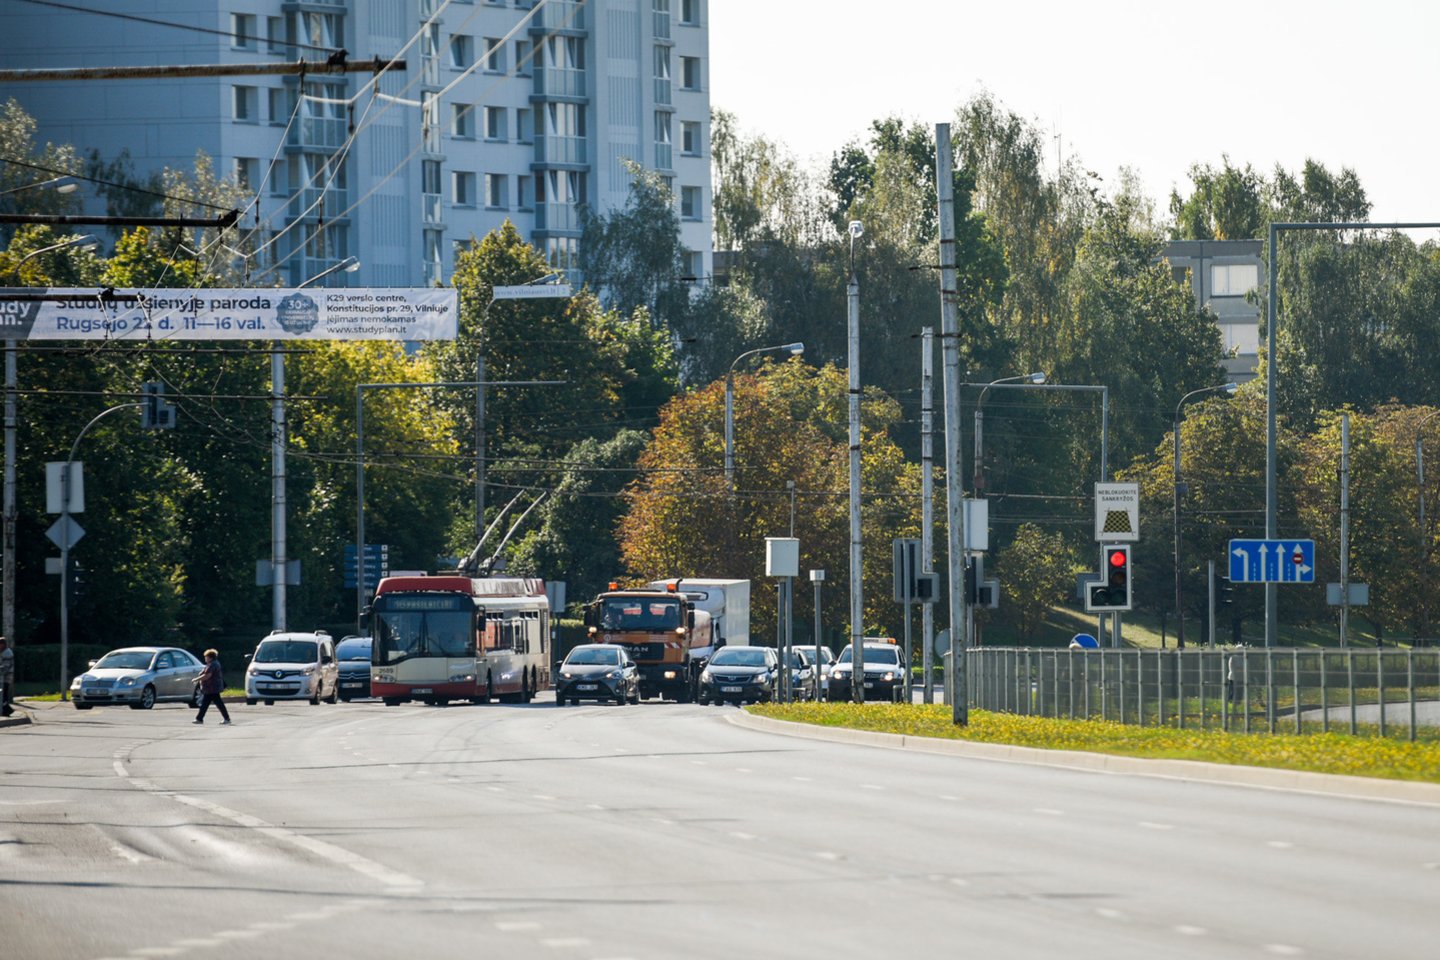  Vilniaus savivaldybės atstovai teigia, kad sostinėje veikia žalieji transporto koridoriai, tačiau realybėje jų teisingas veikimas priklauso nuo labai daug faktorių.<br> D.Umbraso nuotr.